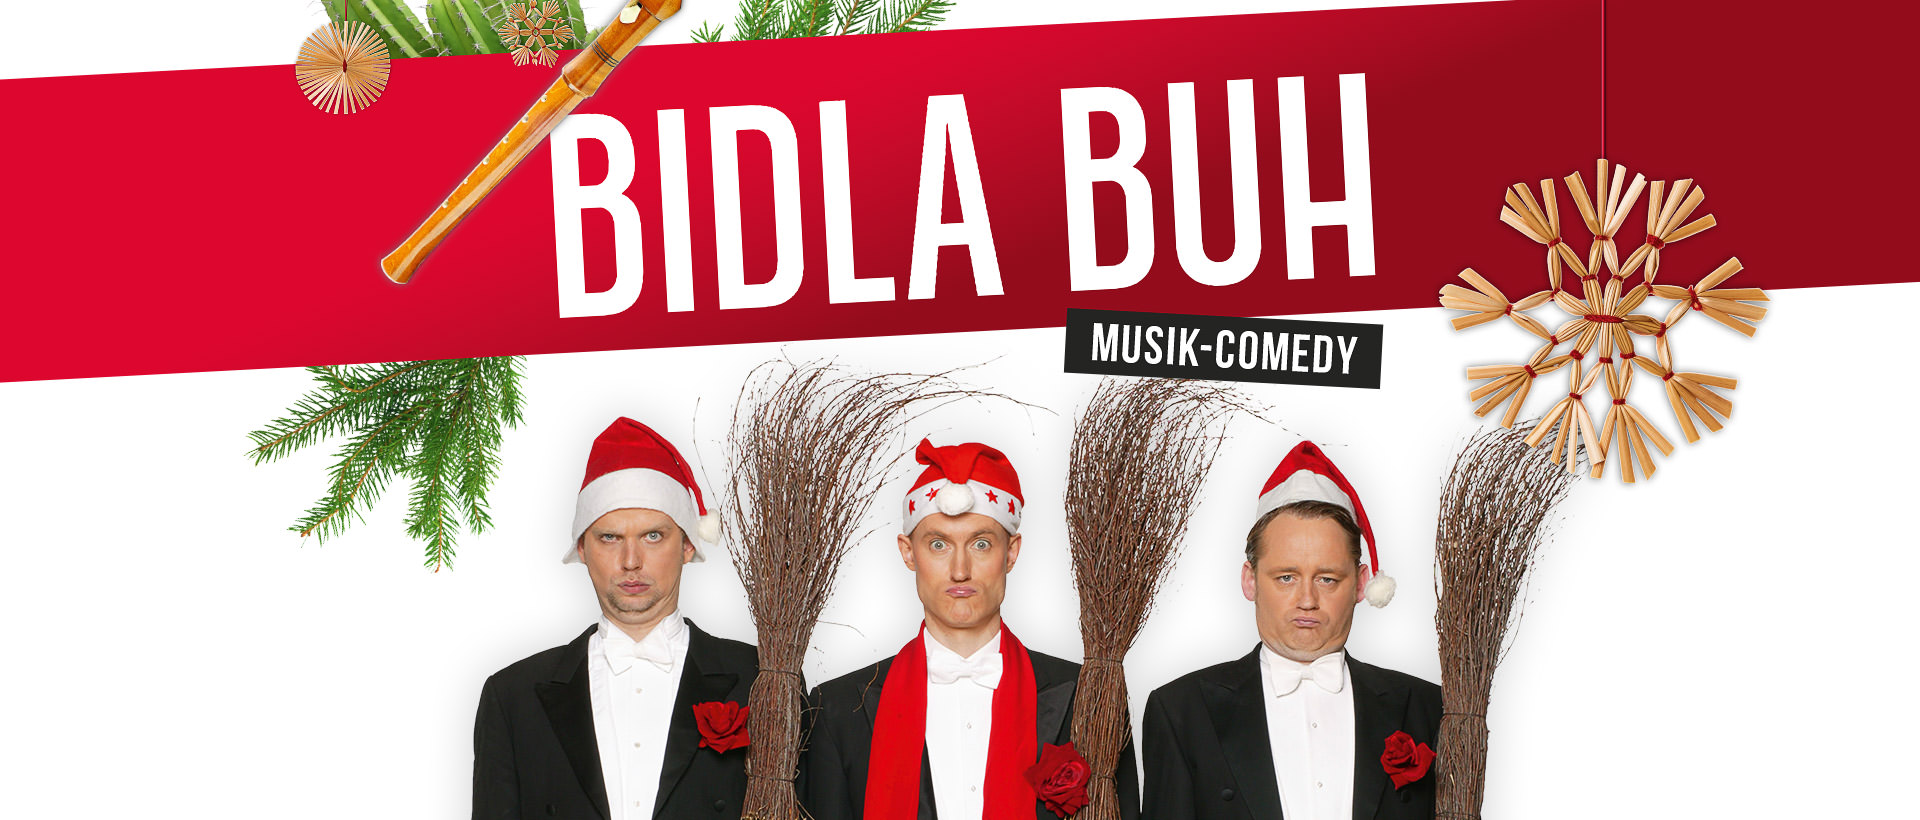 Bidla Buh kommt am 29. November 2017 nach Greifswald und präsentiert sein Weihnachts-Special "Advent, Advent, der Kaktus brennt …".